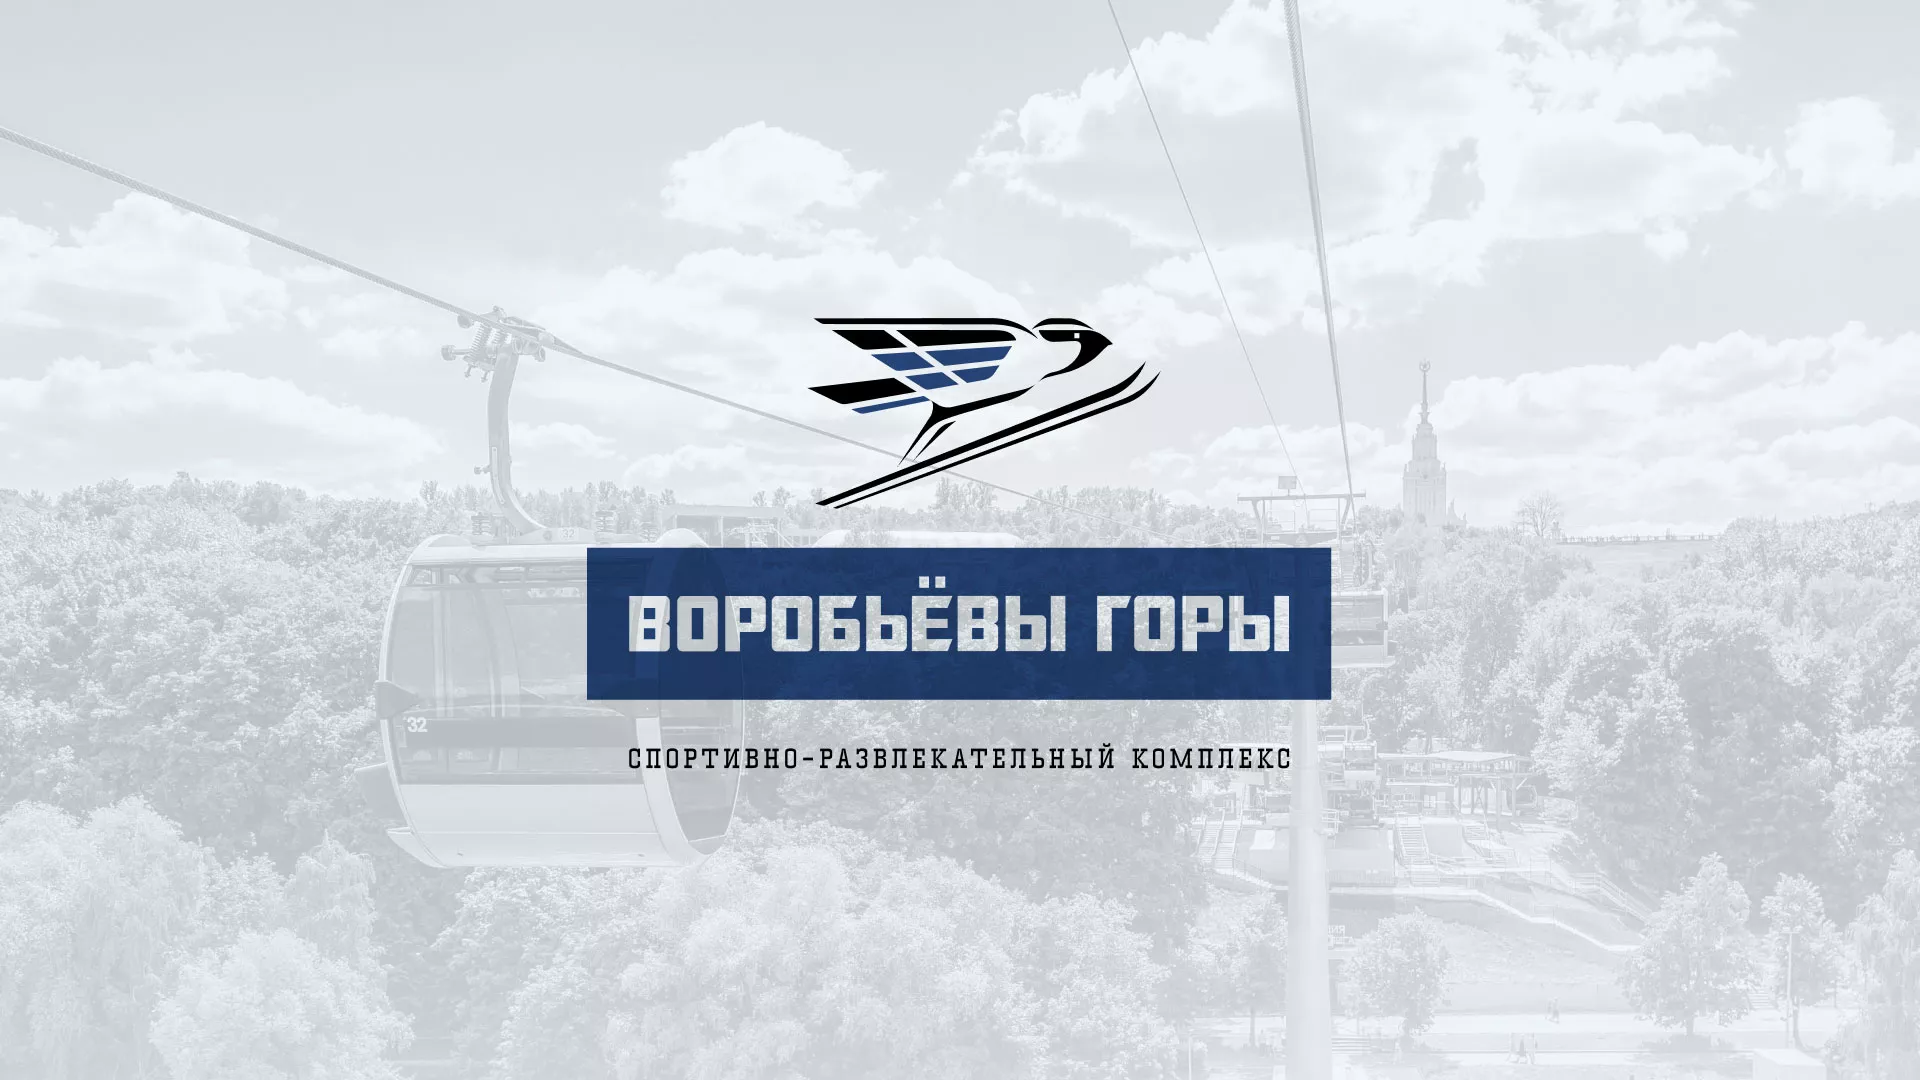 Разработка сайта в Кирово-Чепецке для спортивно-развлекательного комплекса «Воробьёвы горы»